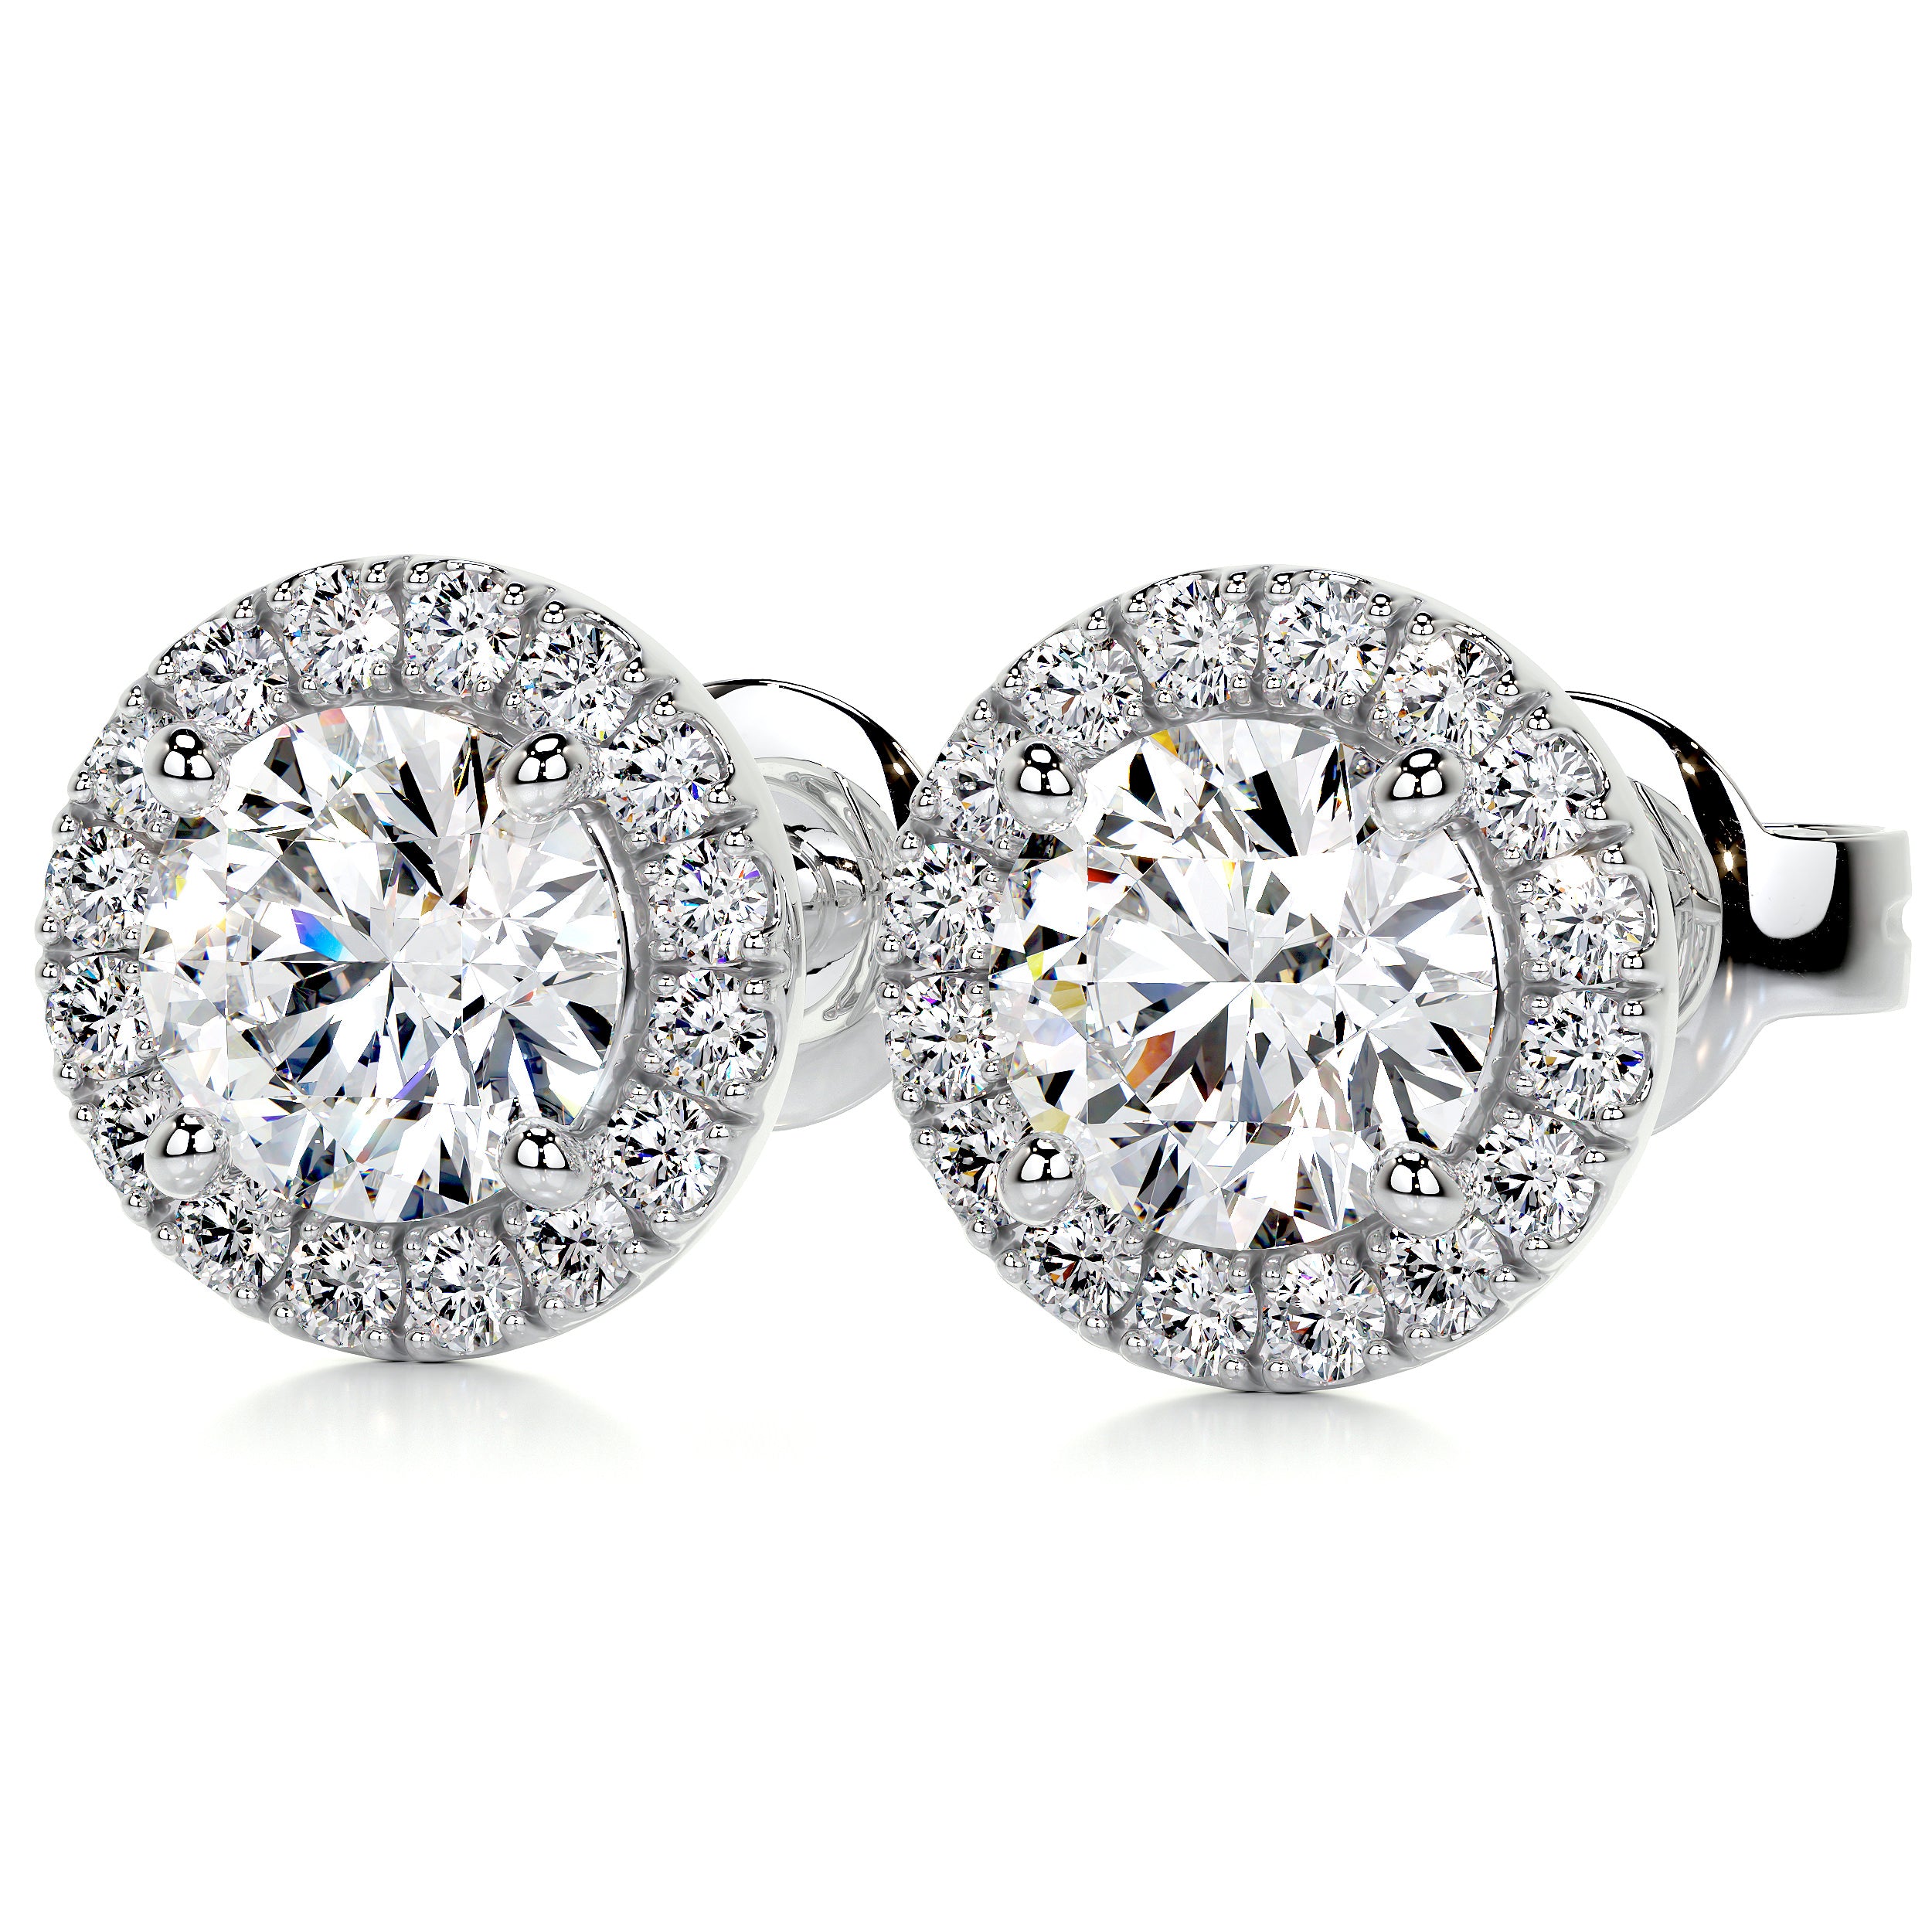 Erica Lab Grown Diamond Earrings -14K White Gold